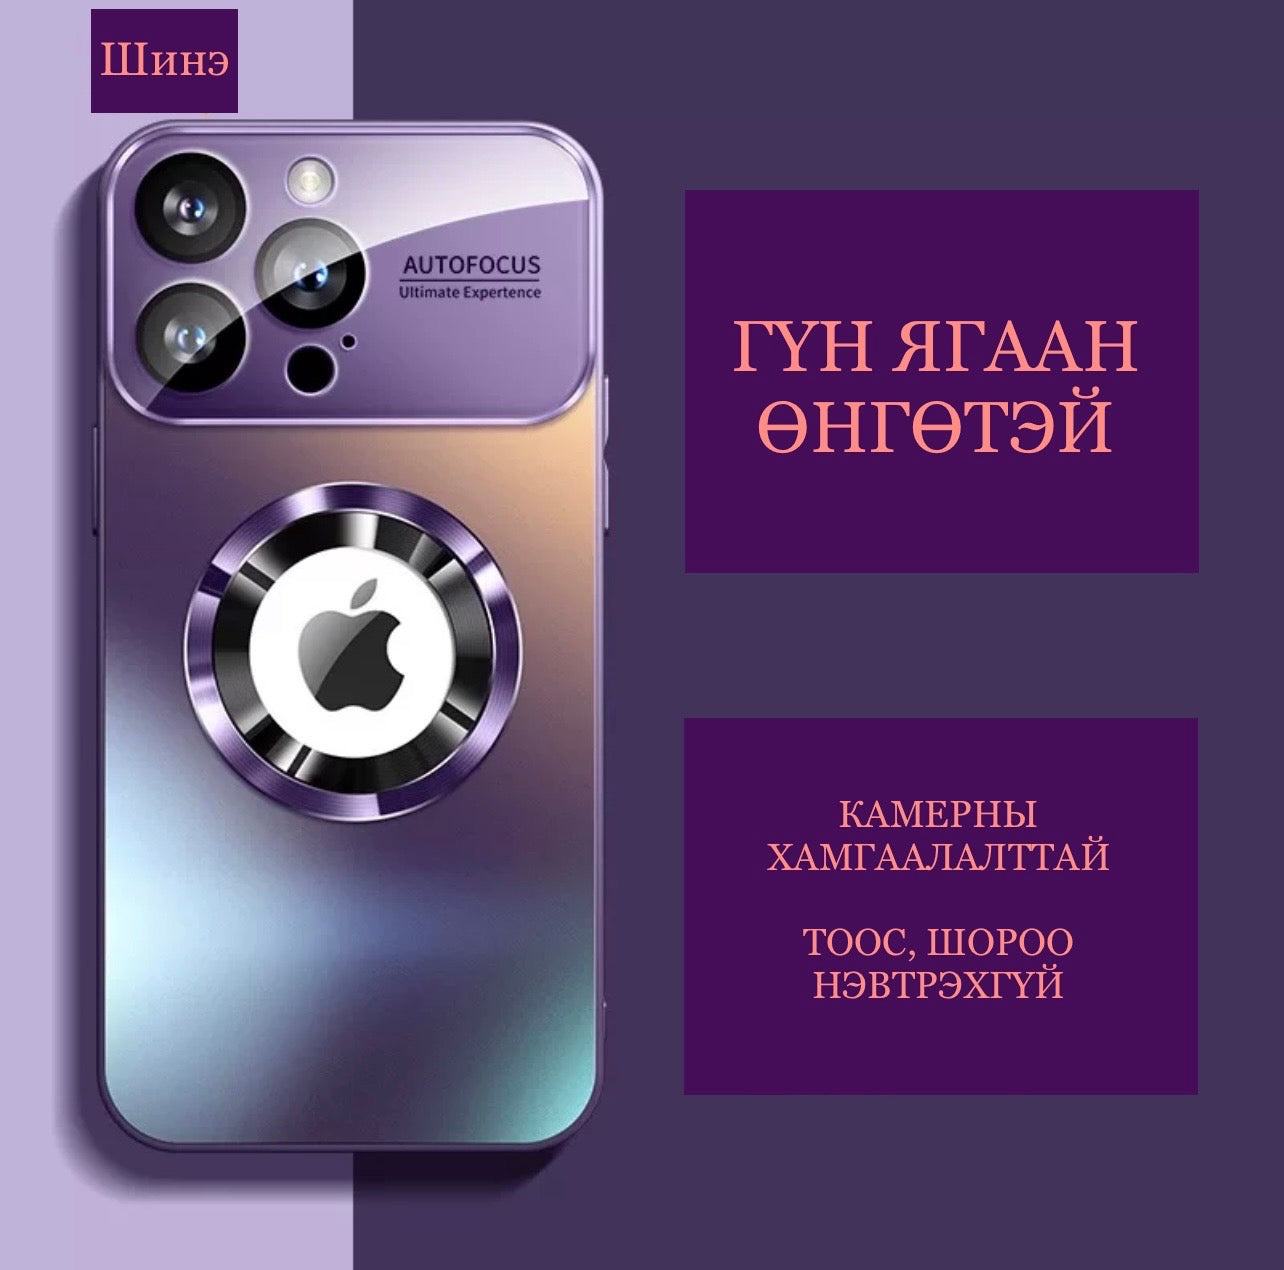 iPhone case